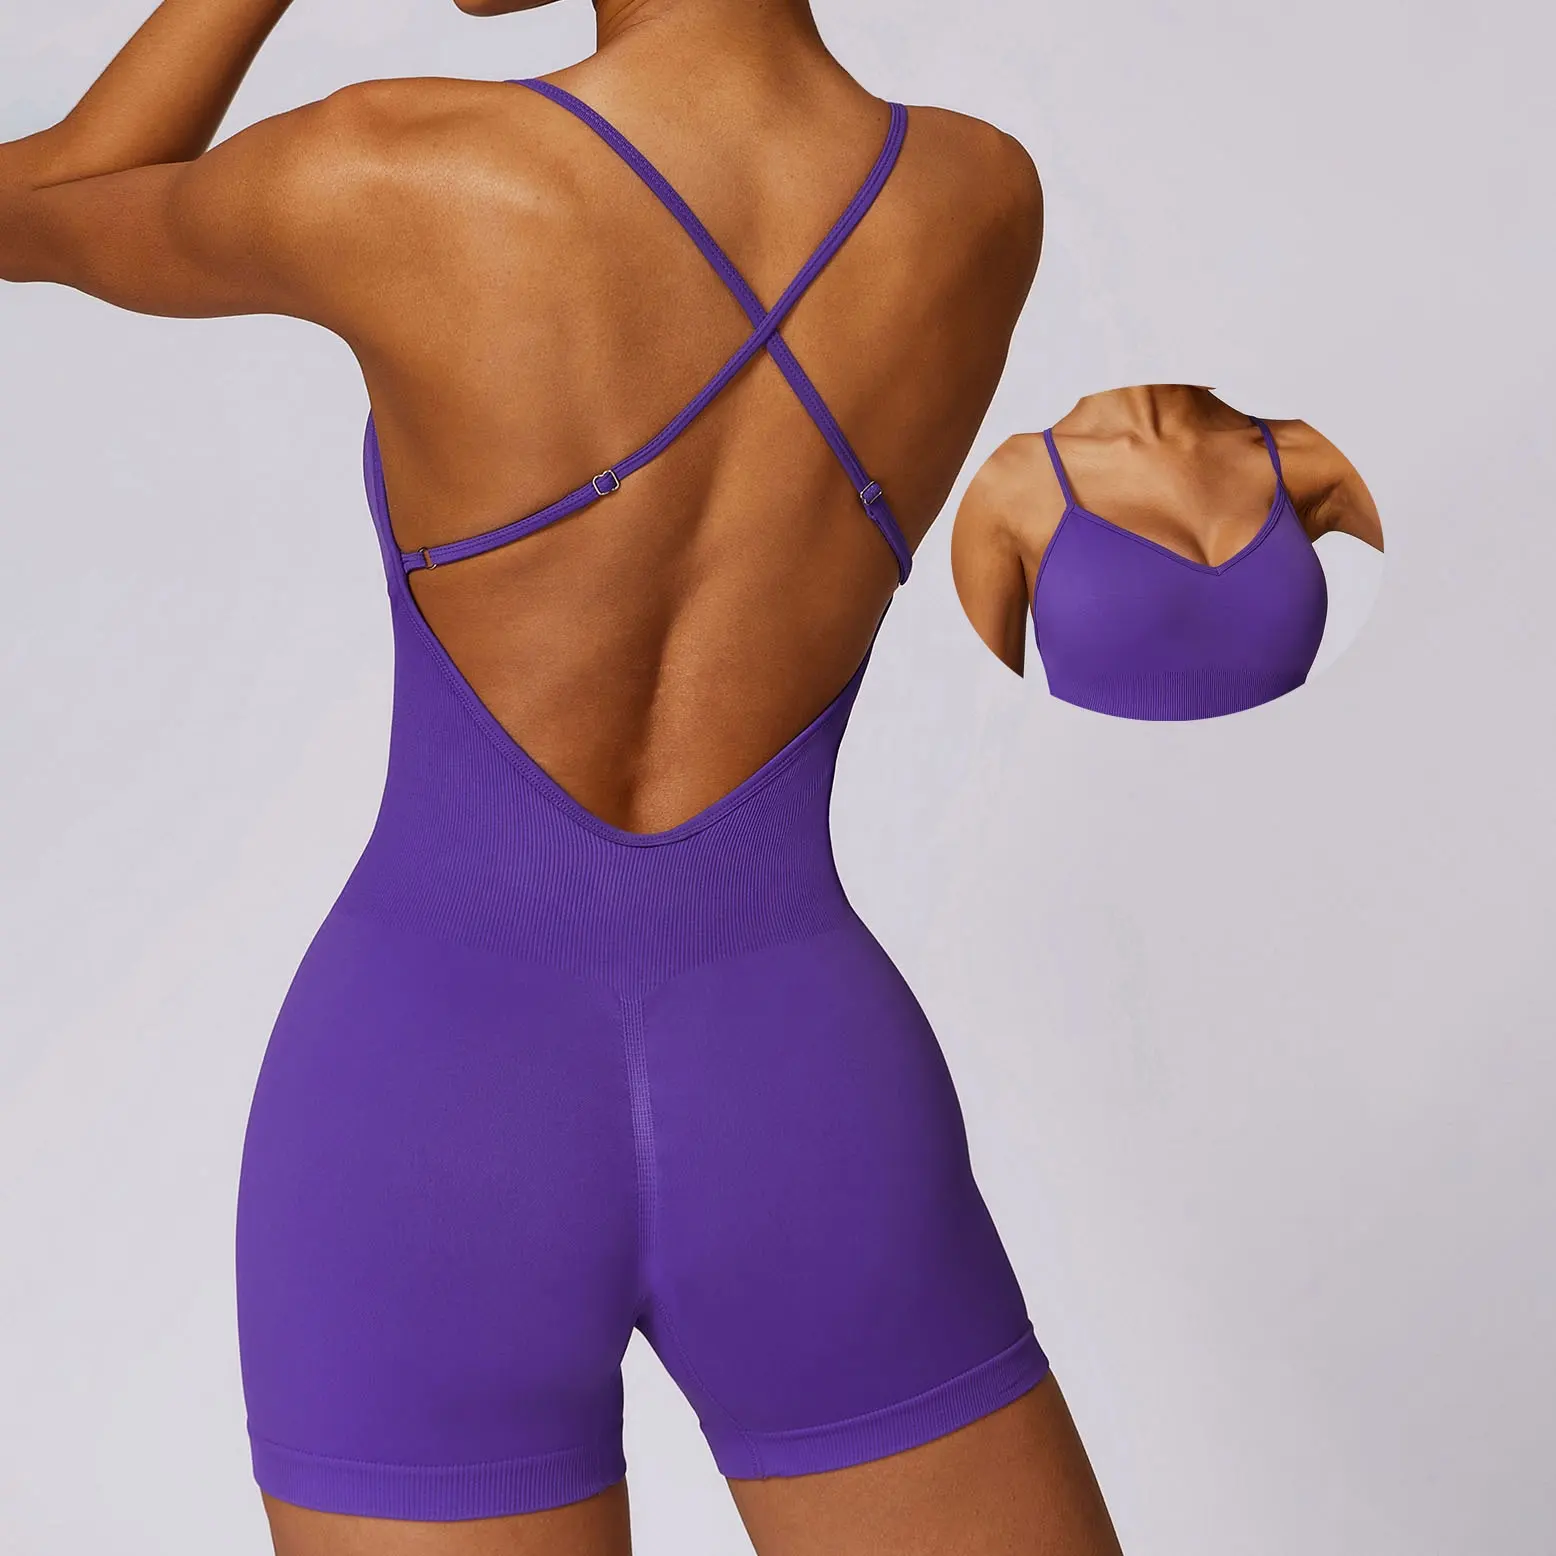 YIYI einstellbare Riemen hochwertige nahtlose Yogastrampler hohe Unterstützung Fitnessstudio-Set nachhaltige Damen-Training Sport einteiliger Yogakleid